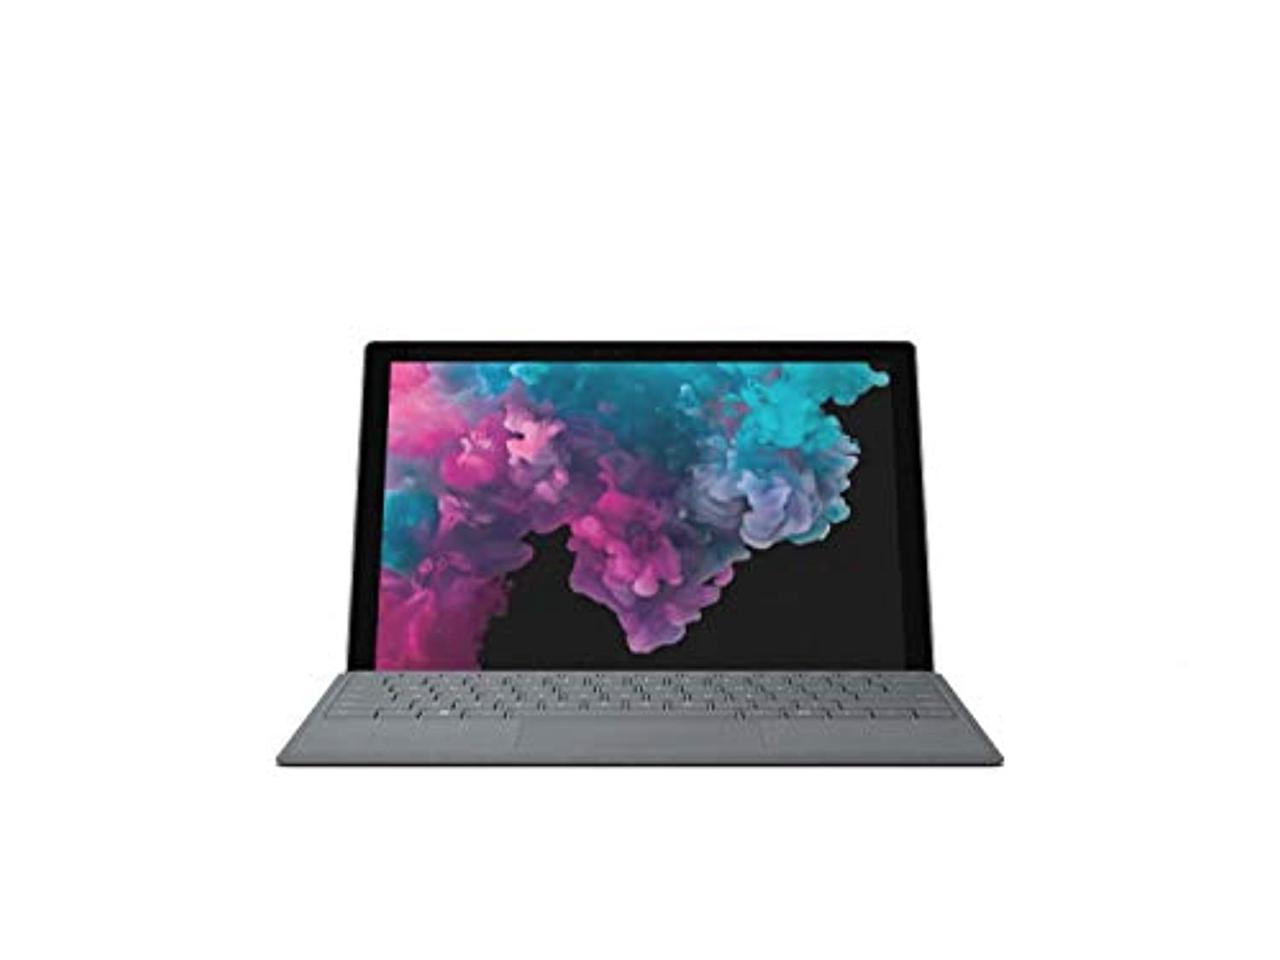 Microsoft Surface Pro 6 (Intel Core i5, 128GB SSD, 8GB RAM) + Type